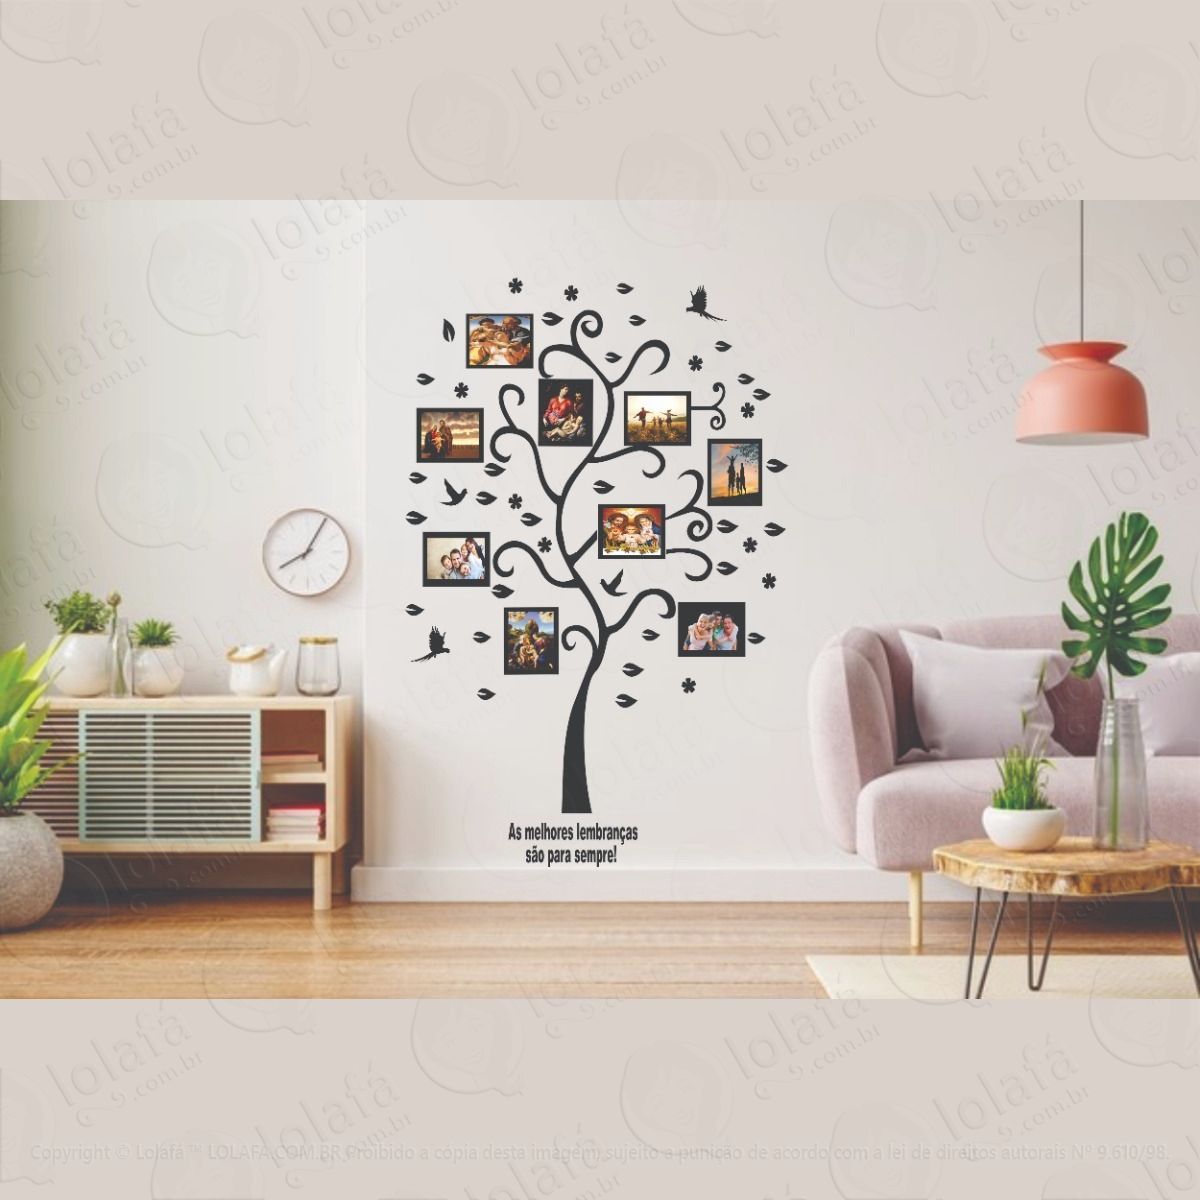 adesivo decorativo Árvore genealógica para fotos de família mod:1330